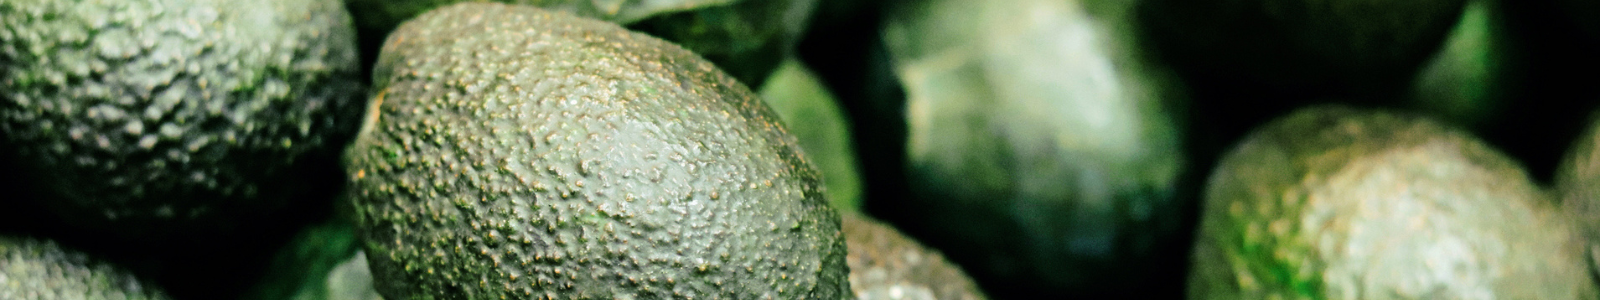 Close up of avocados